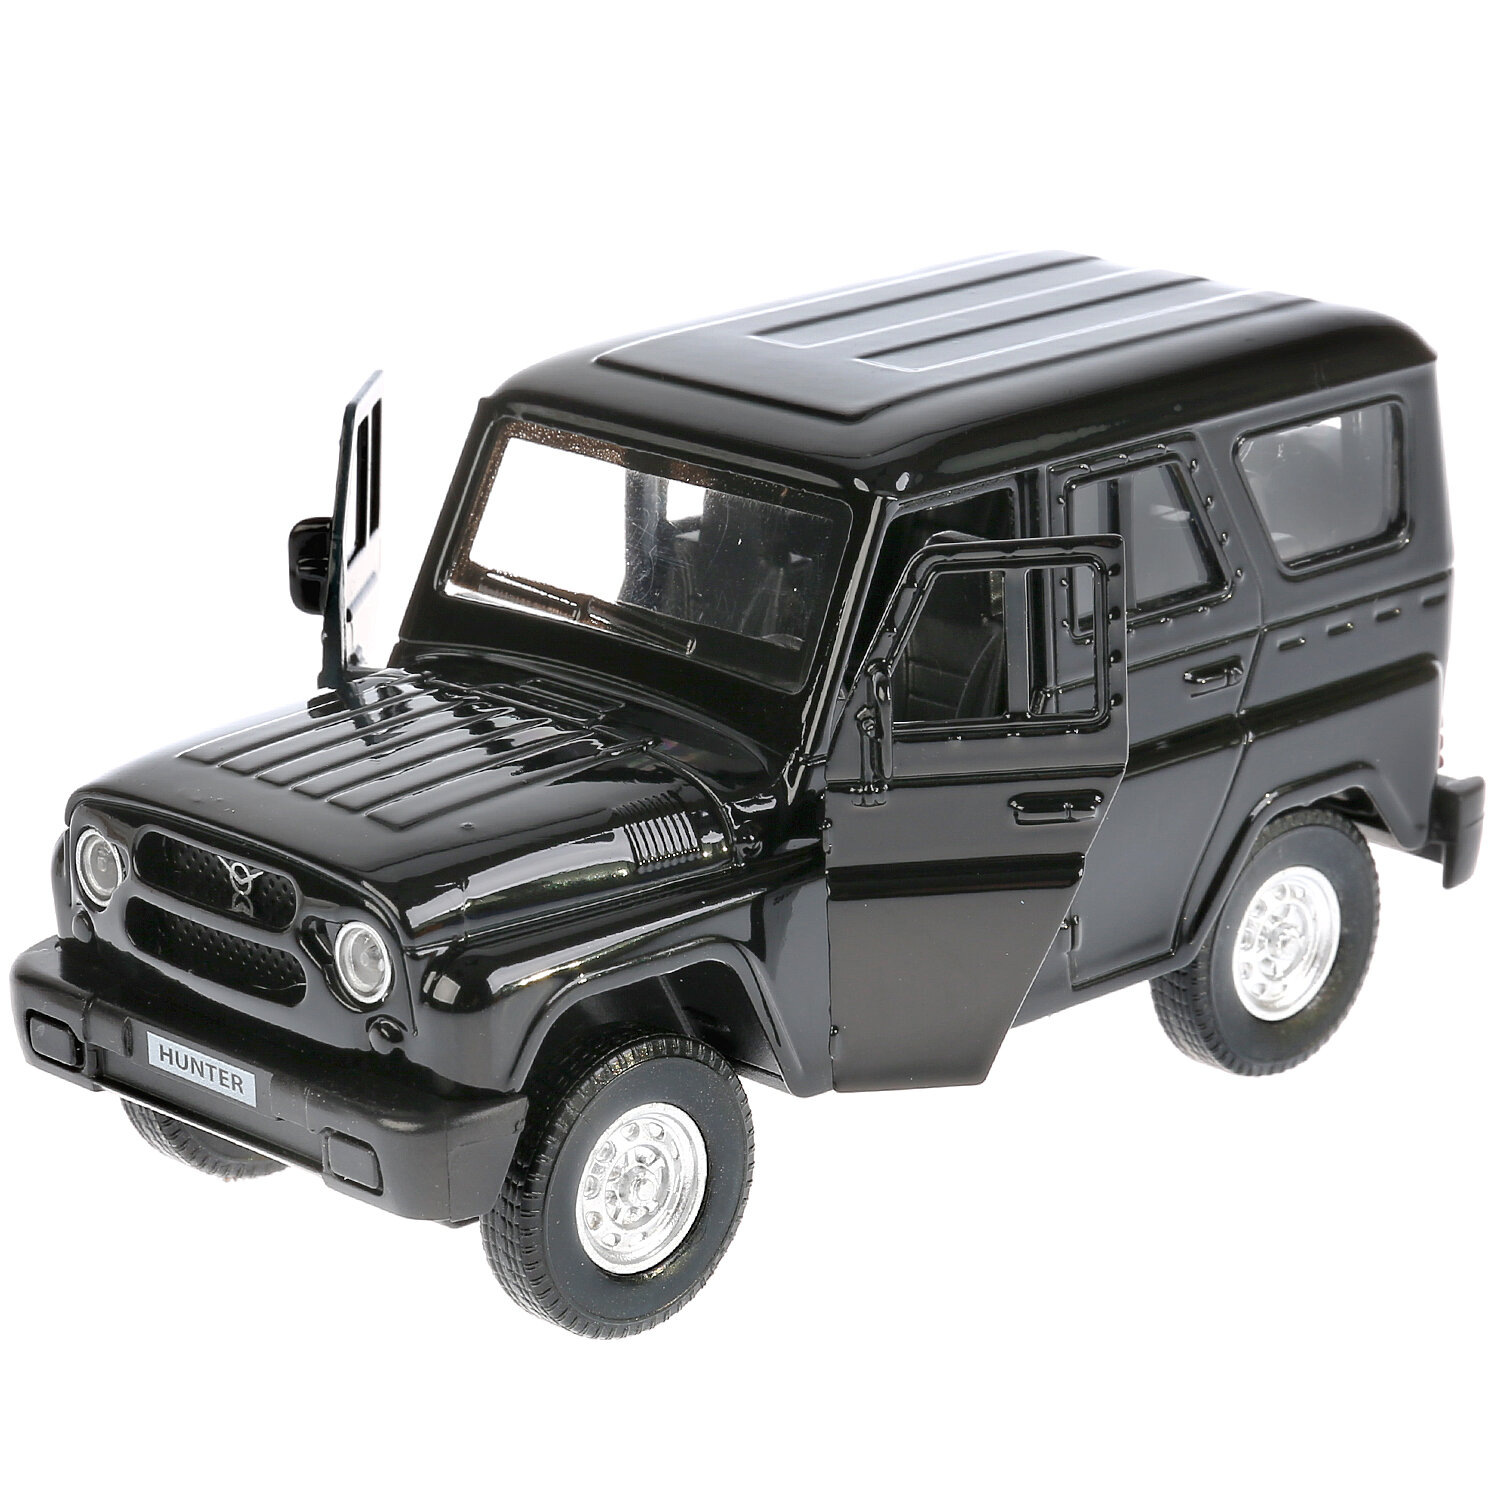 Машинка игрушка детская для мальчика УАЗ Хантер Технопарк детская металлическая модель коллекционная черный 12 см